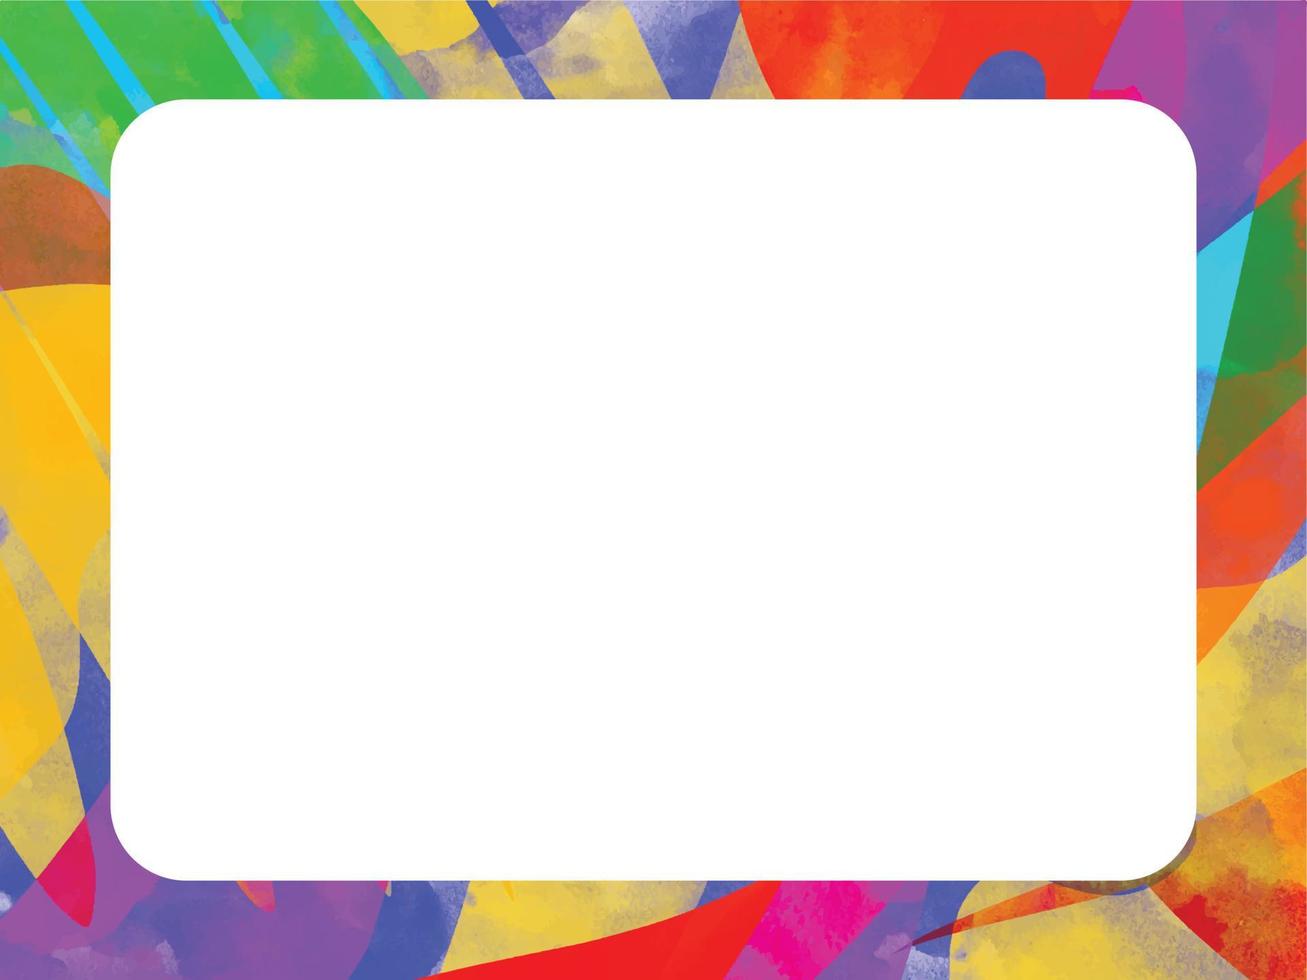 marco de fondo de trazo de pincel grungy de arco iris artístico colorido abstracto con espacio de copia en blanco blanco aislado. plantilla para publicaciones en redes sociales, afiches, pancartas, folletos y otros. vector